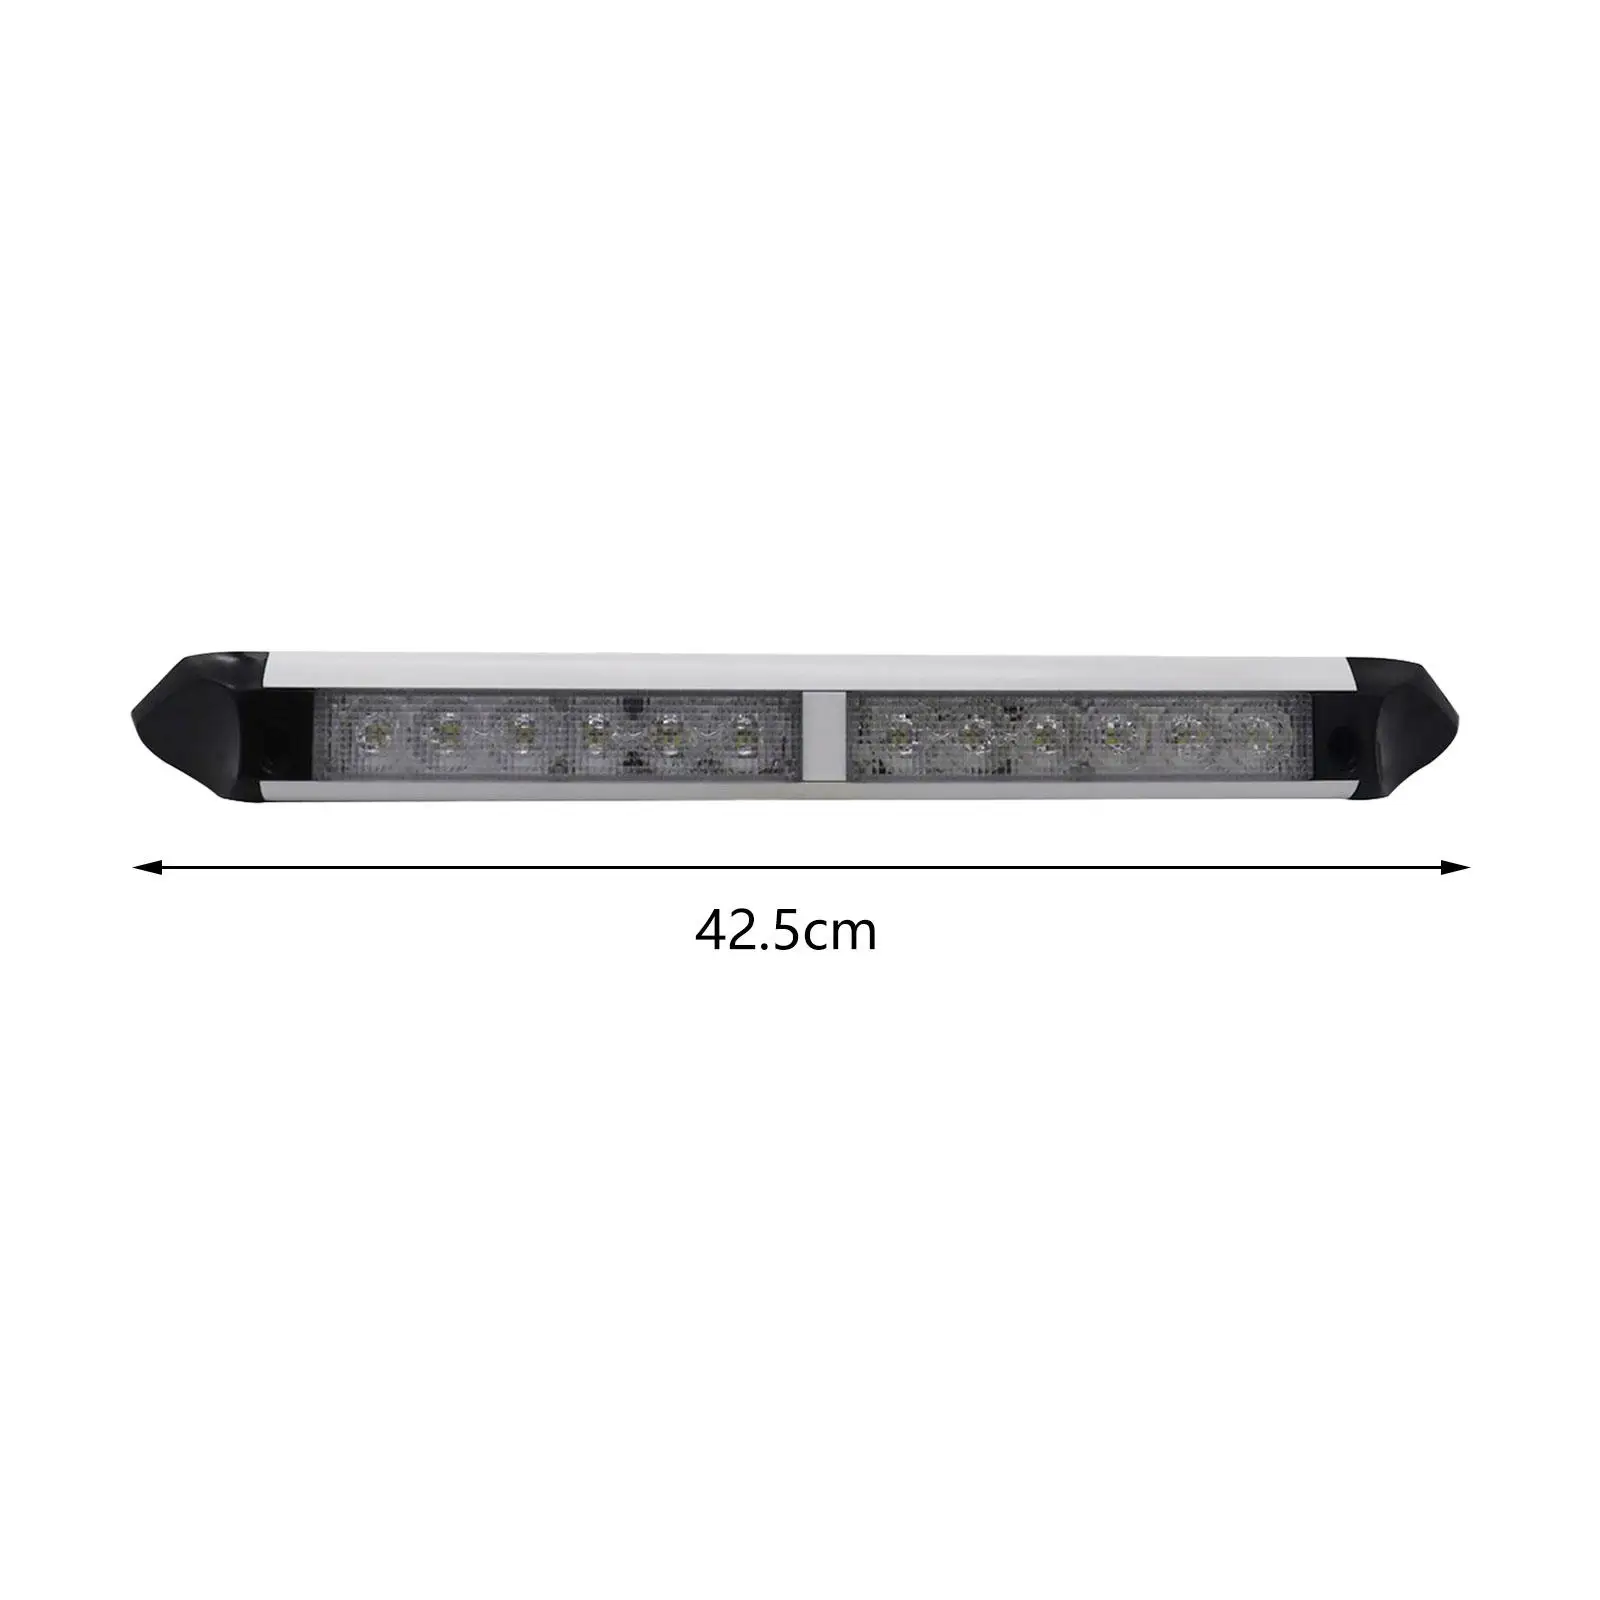 LED Porch Awning Light Fixture Super Bright Light Bar Interior Wall Lamps 12V/24V for Garden Yacht RV Trucks